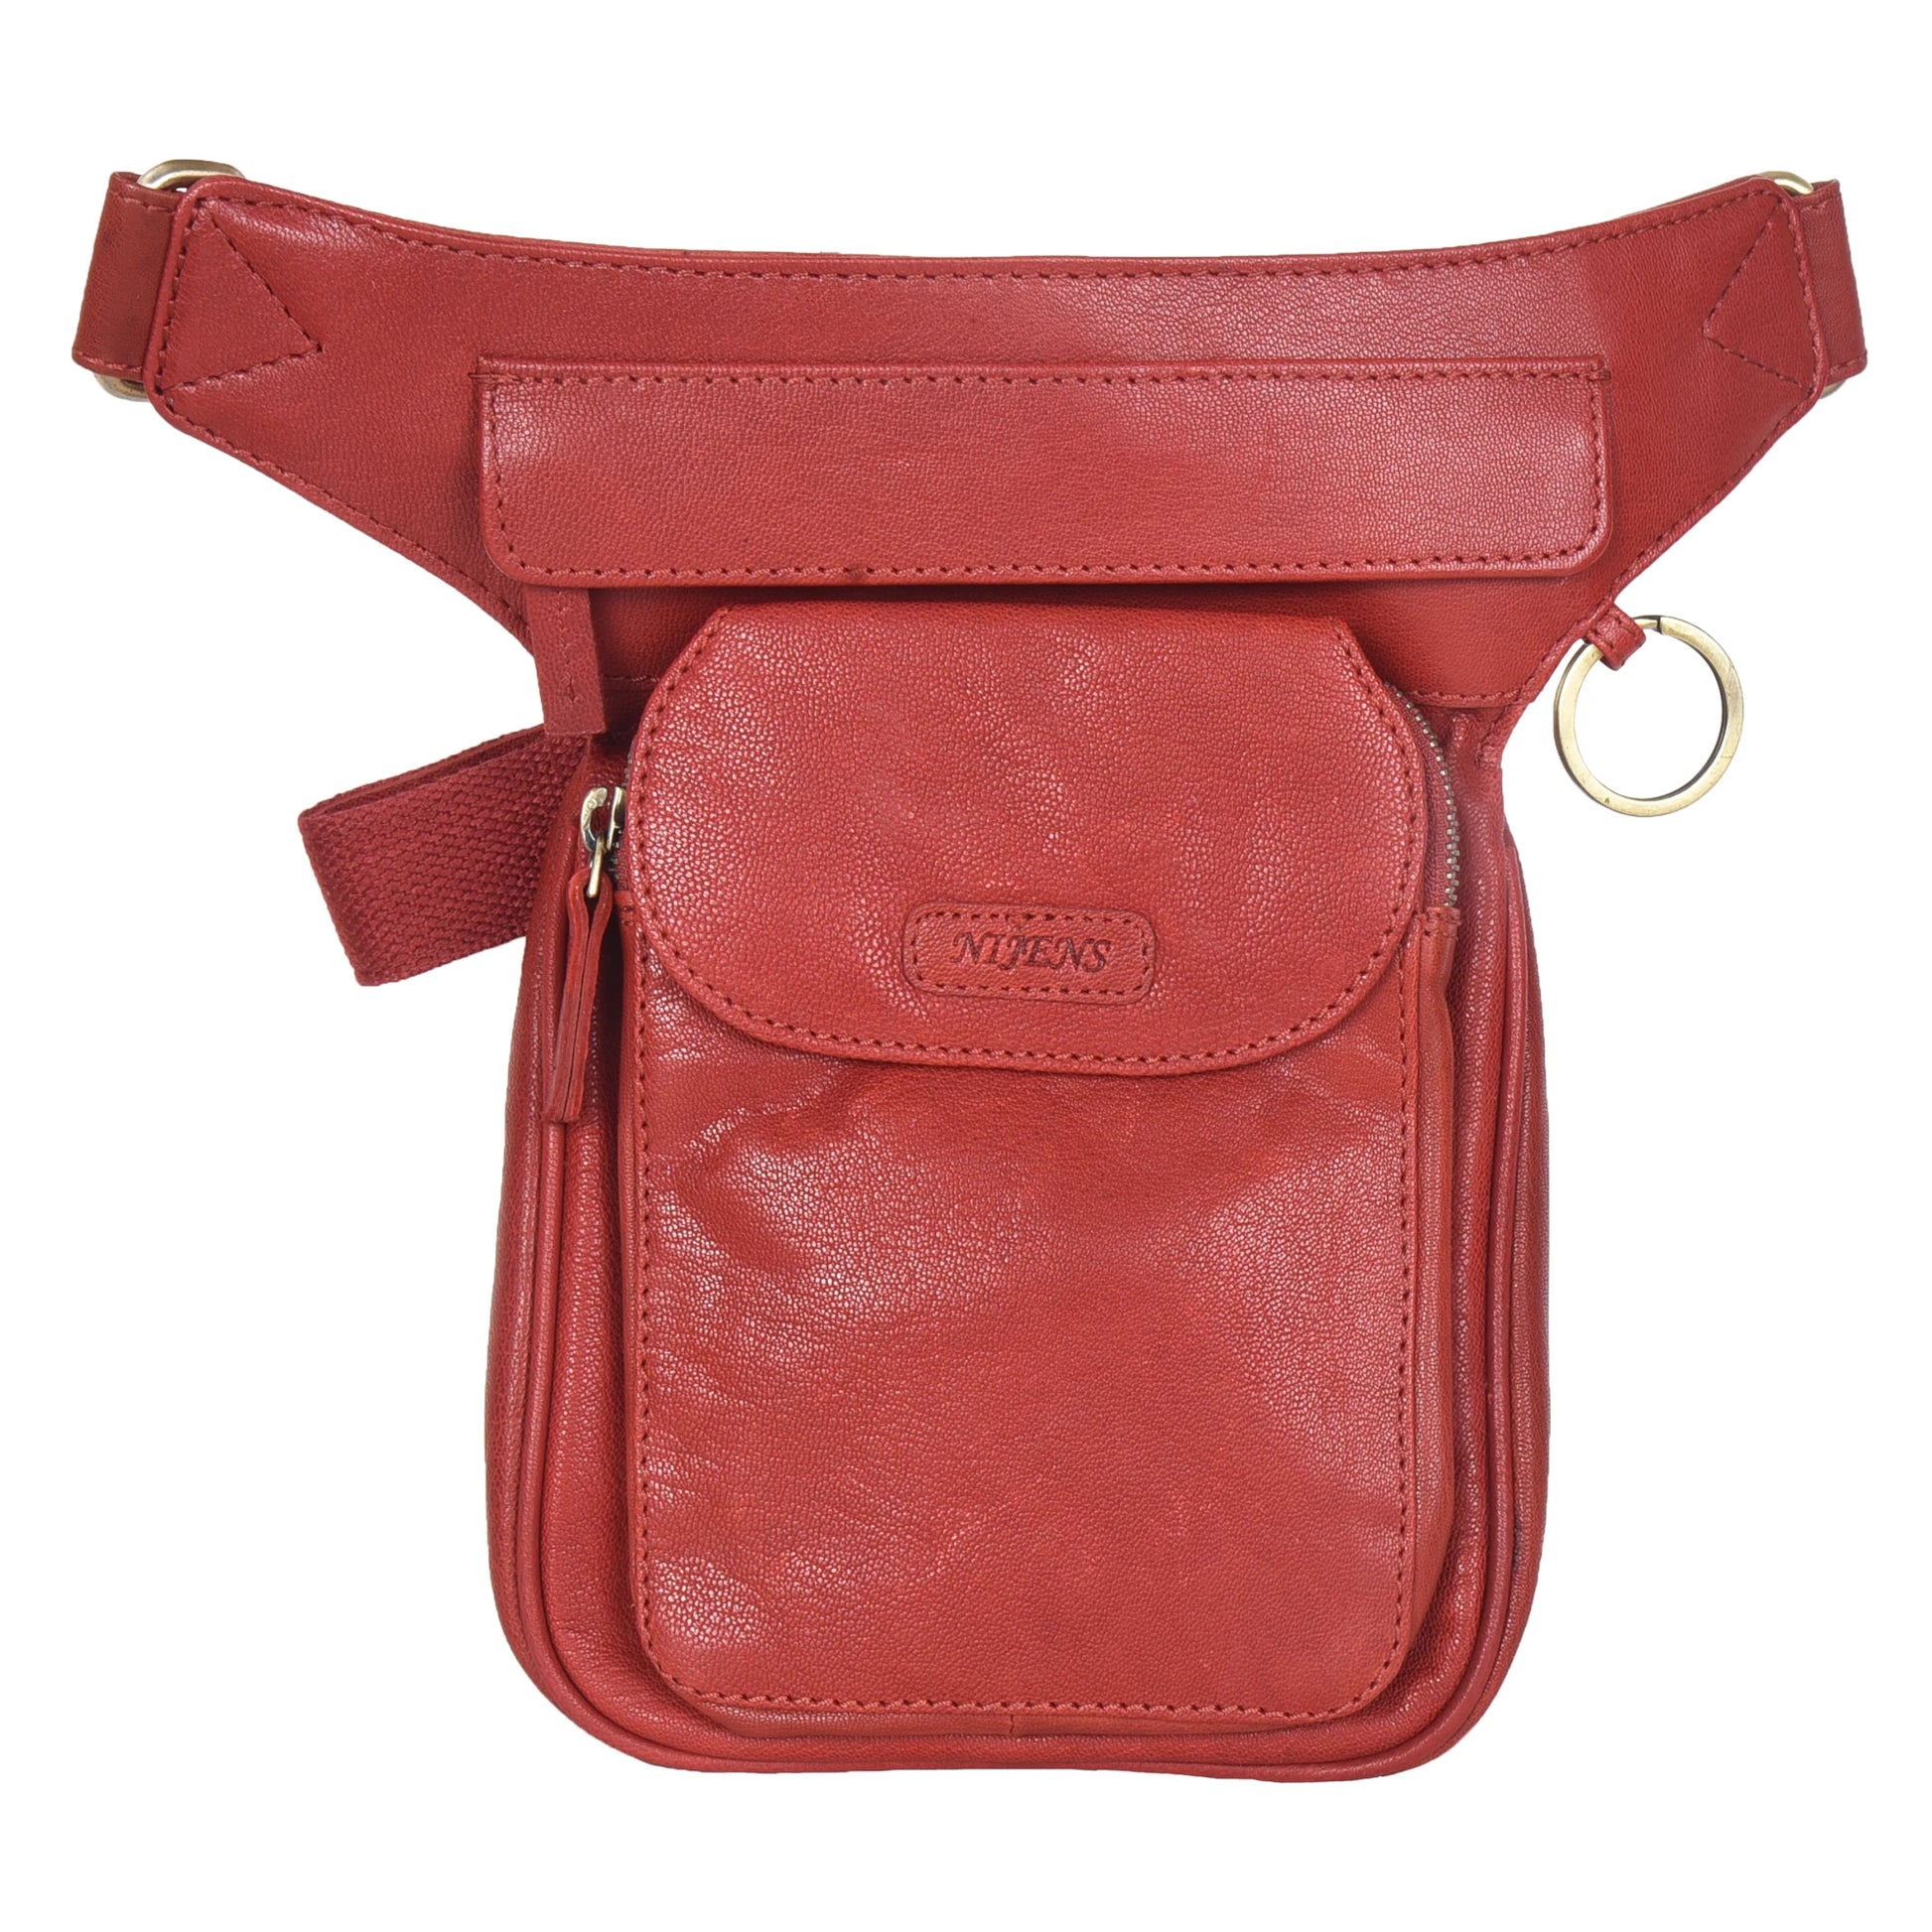 Gürteltasche, Gassi-Tasche Leder Rot, mit einem Ring zum Befestigen von kleinen Sachen. Diese Tasche verfügt über zwei Reißverschlussfächer und einem Einsteckfach vorne.